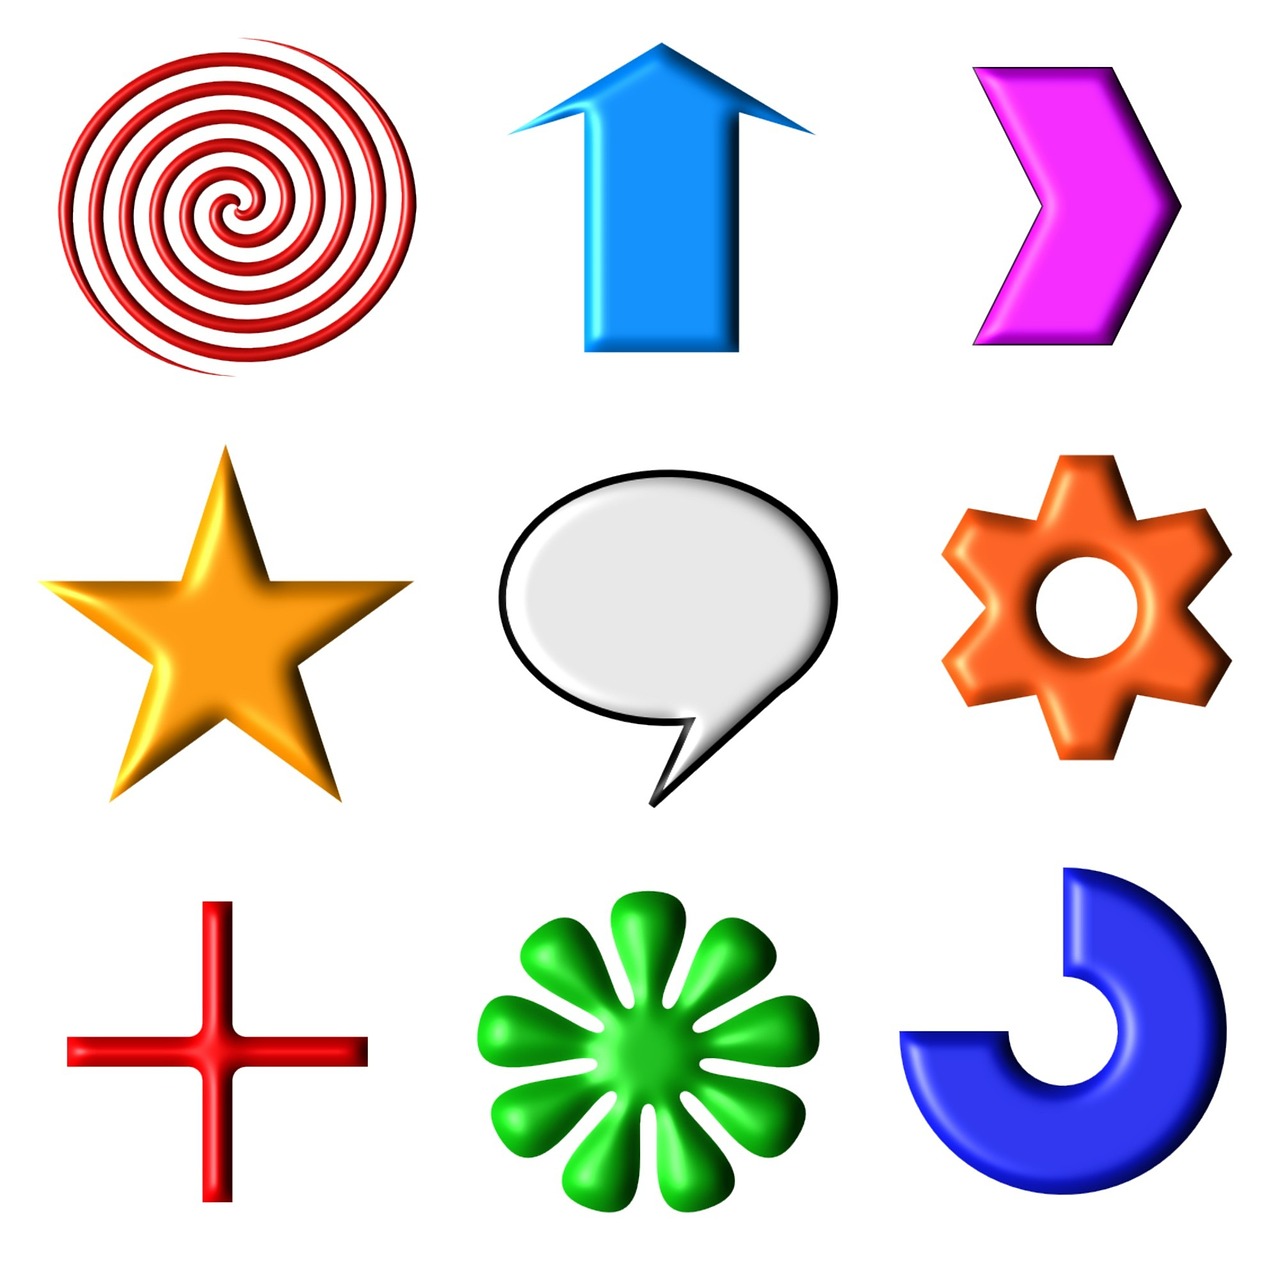 icons symbols shapes free photo